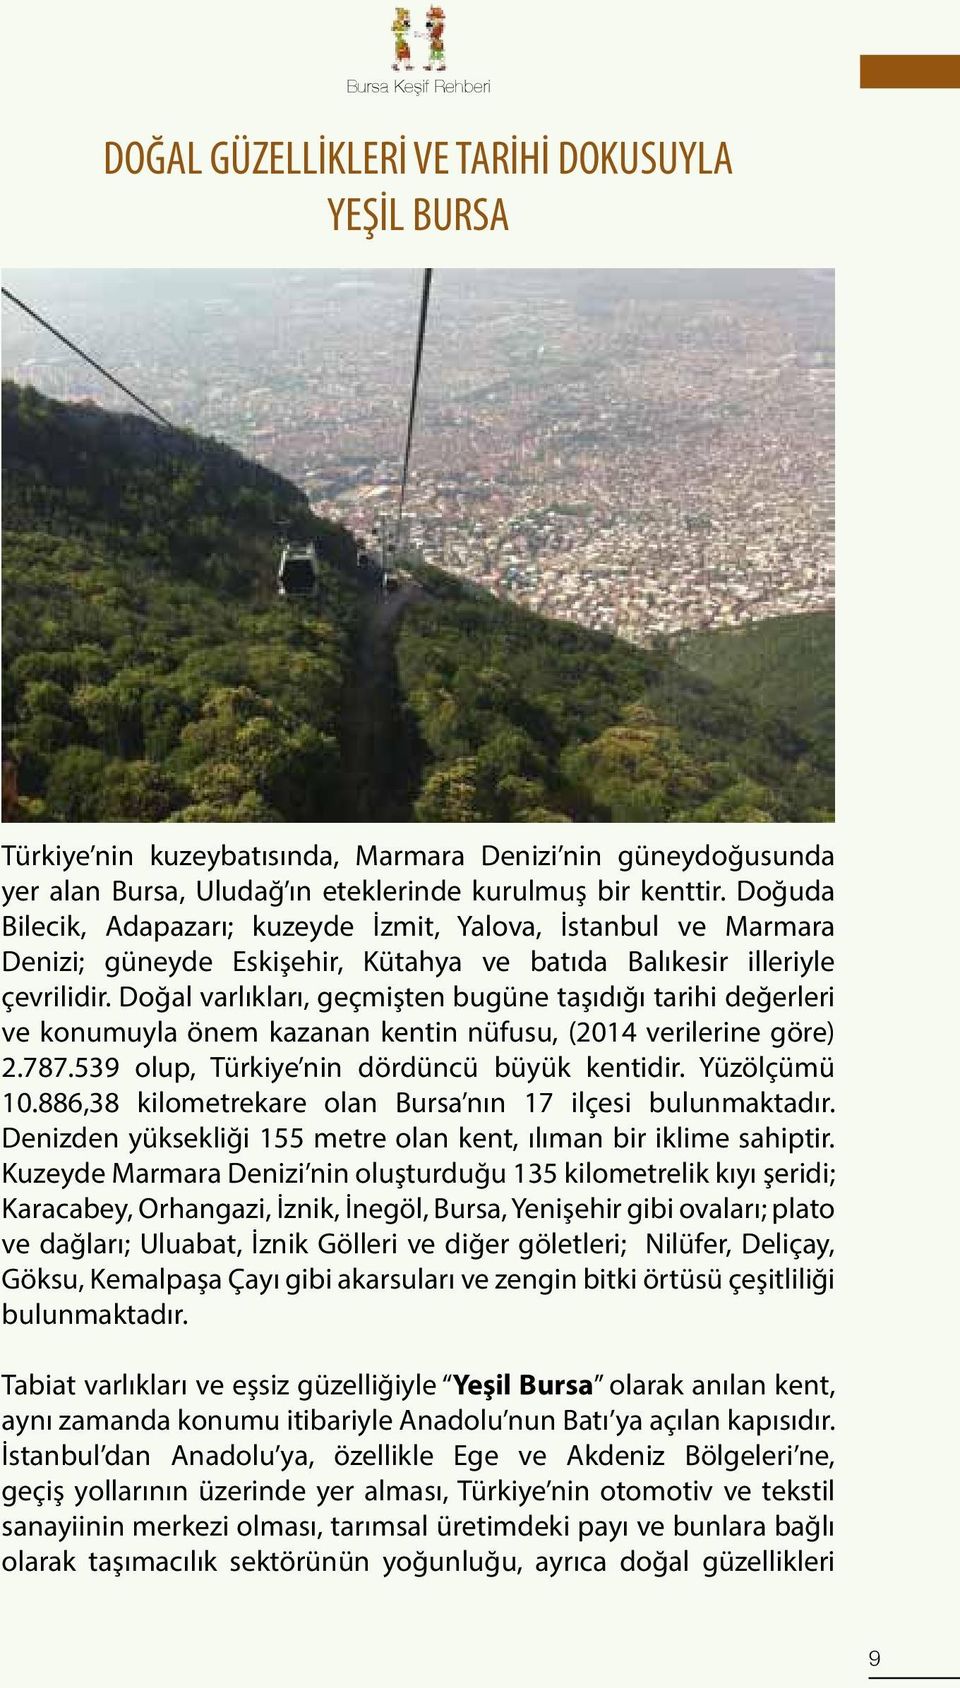 Doğal varlıkları, geçmişten bugüne taşıdığı tarihi değerleri ve konumuyla önem kazanan kentin nüfusu, (2014 verilerine göre) 2.787.539 olup, Türkiye nin dördüncü büyük kentidir. Yüzölçümü 10.